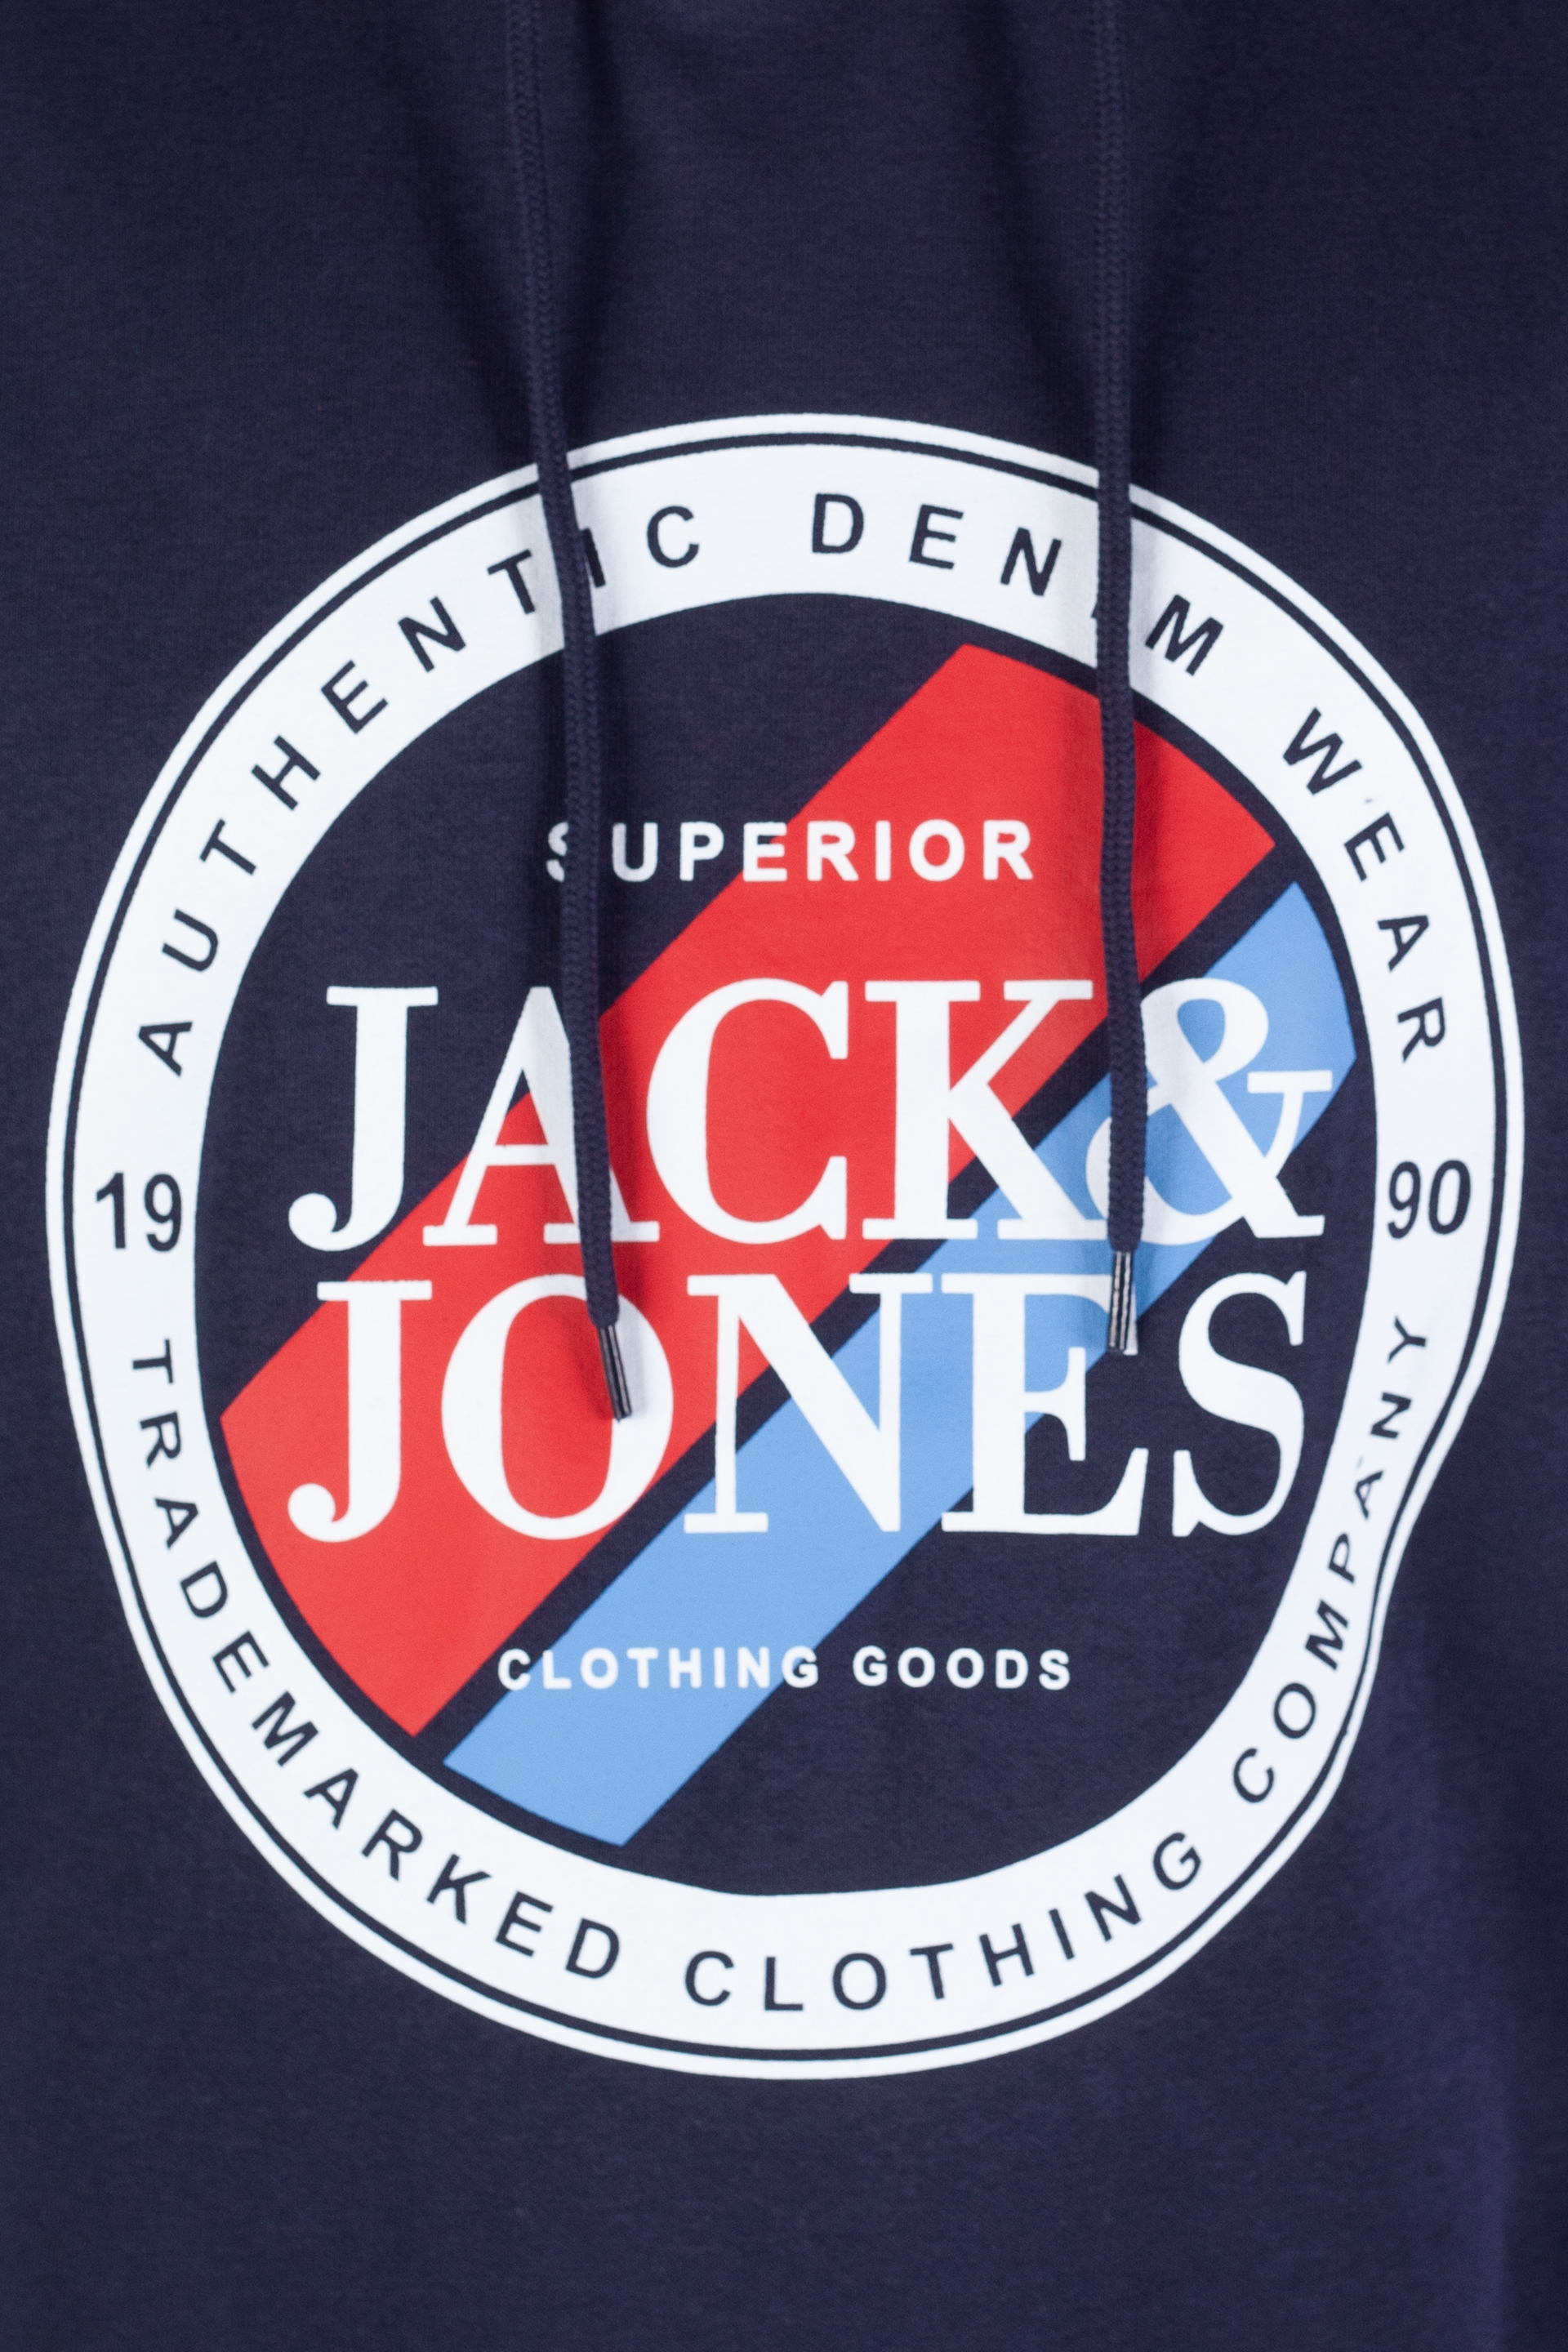 Džemperis JACK & JONES 12250266-Navy-Blazer